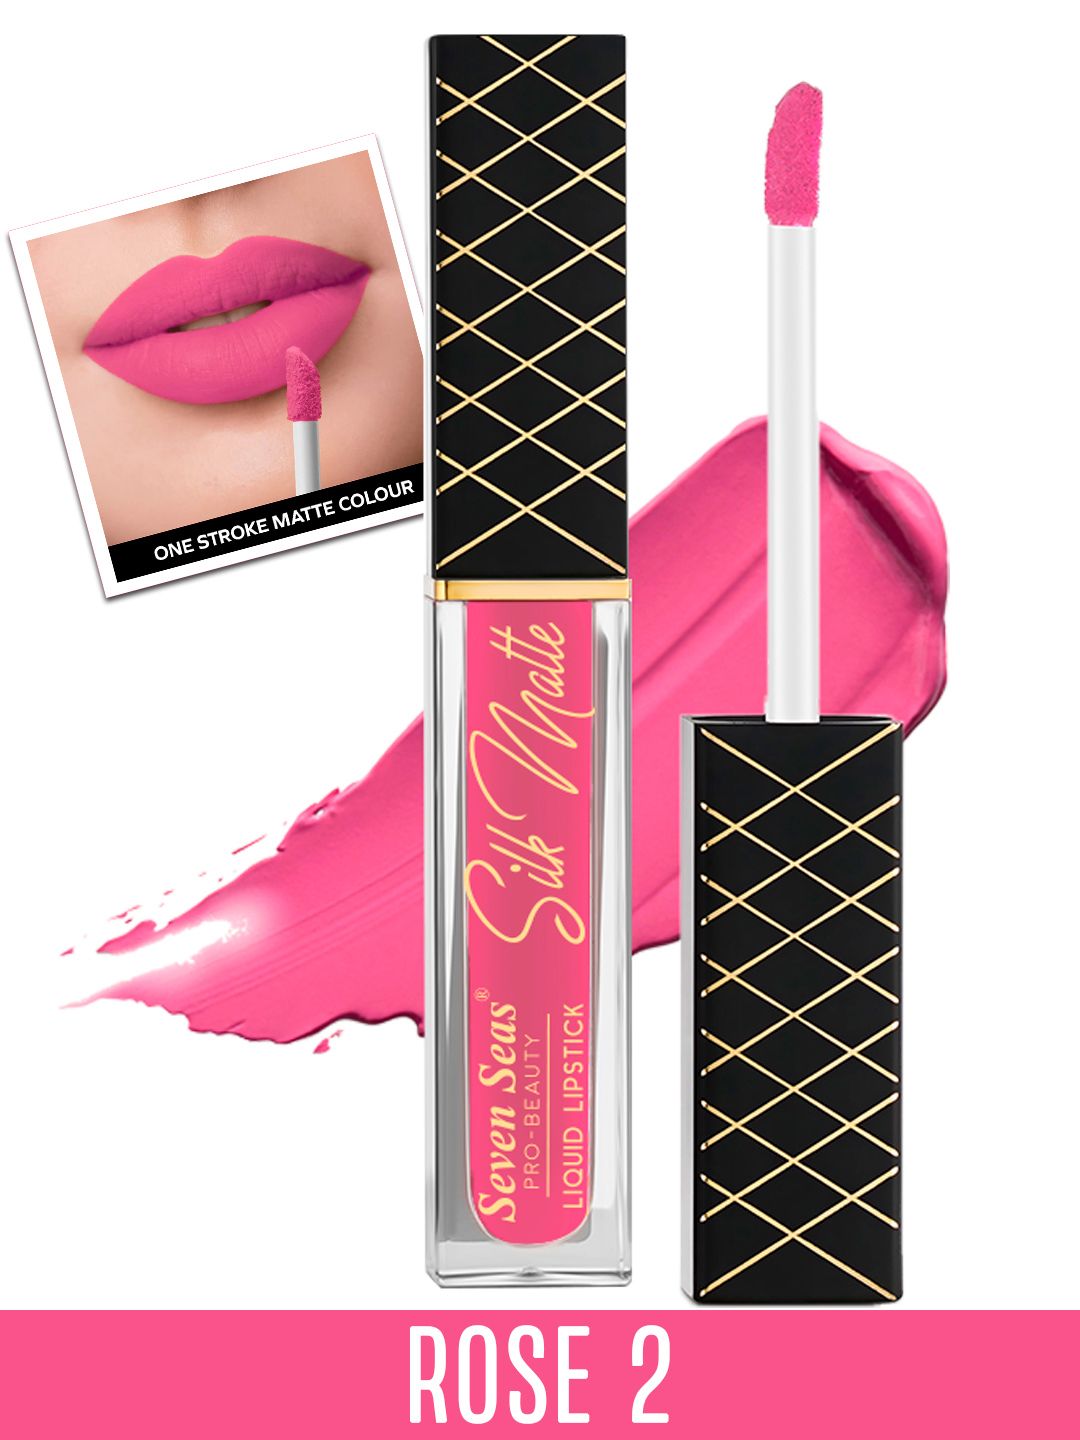 Seven Seas Transfer Proof Silk Matte Liquid Lipstick 8 g - Rose 2 Price in India